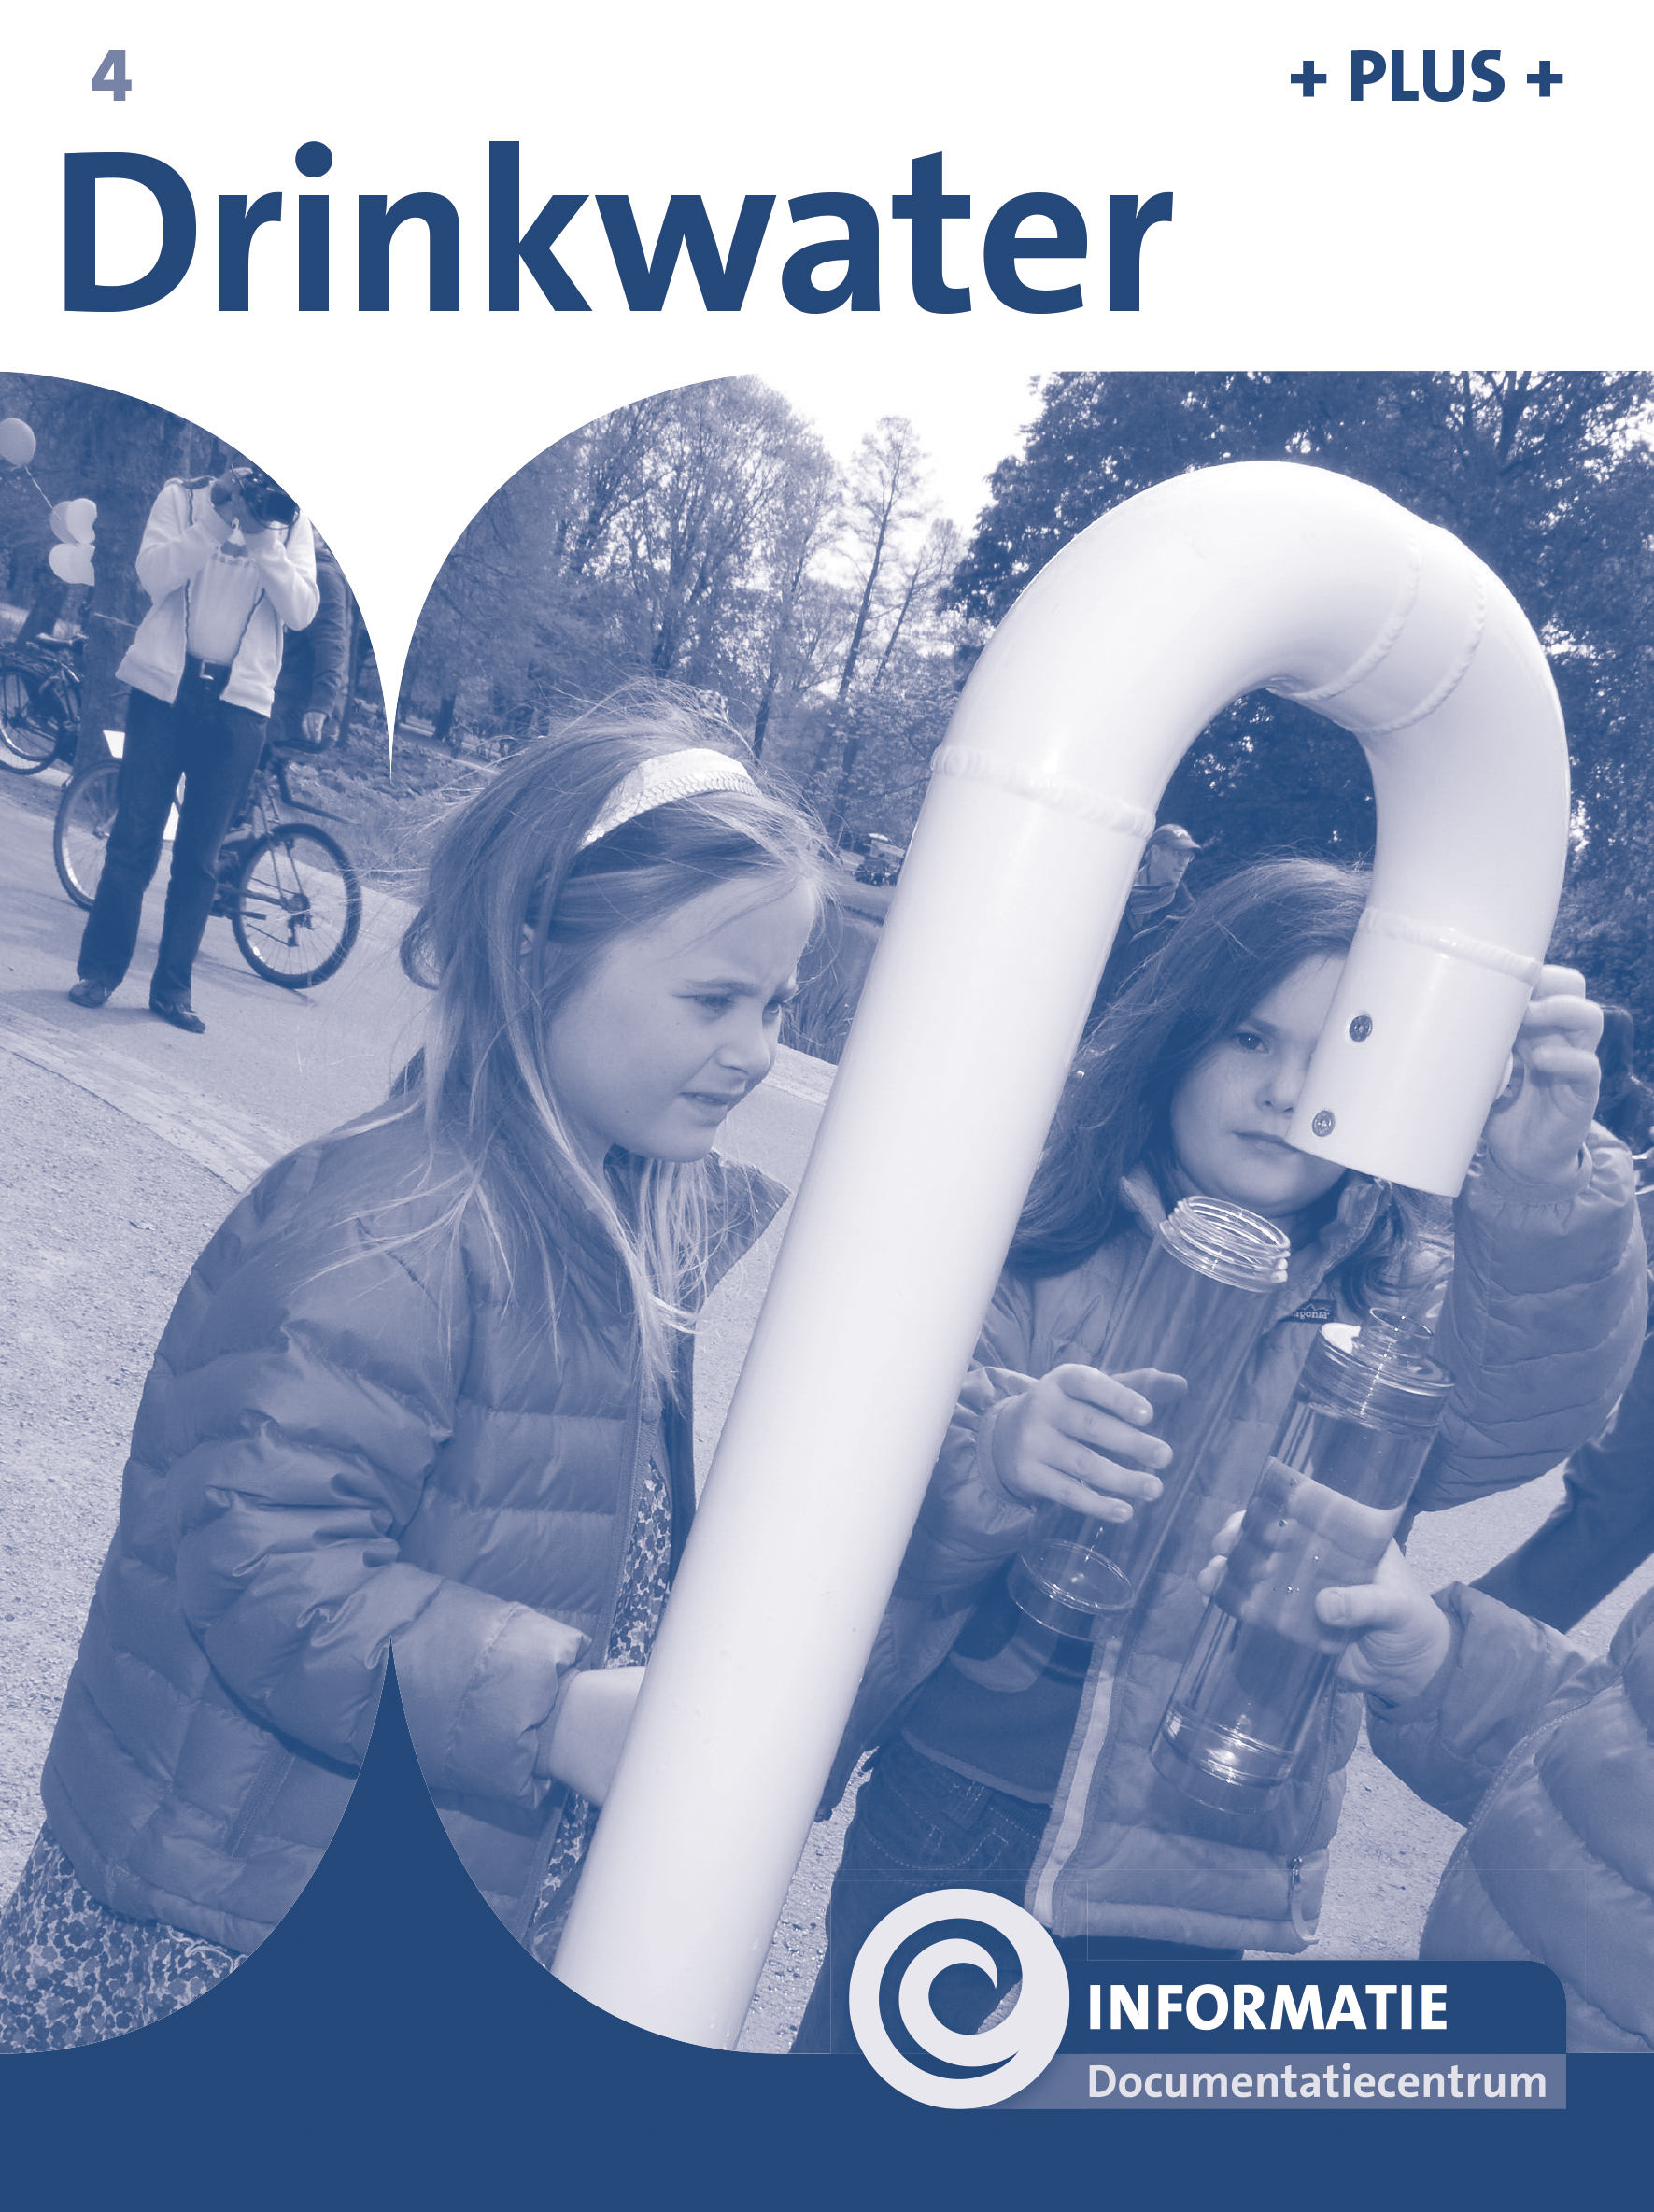 DNKINF004 Drinkwater (plusboekje)